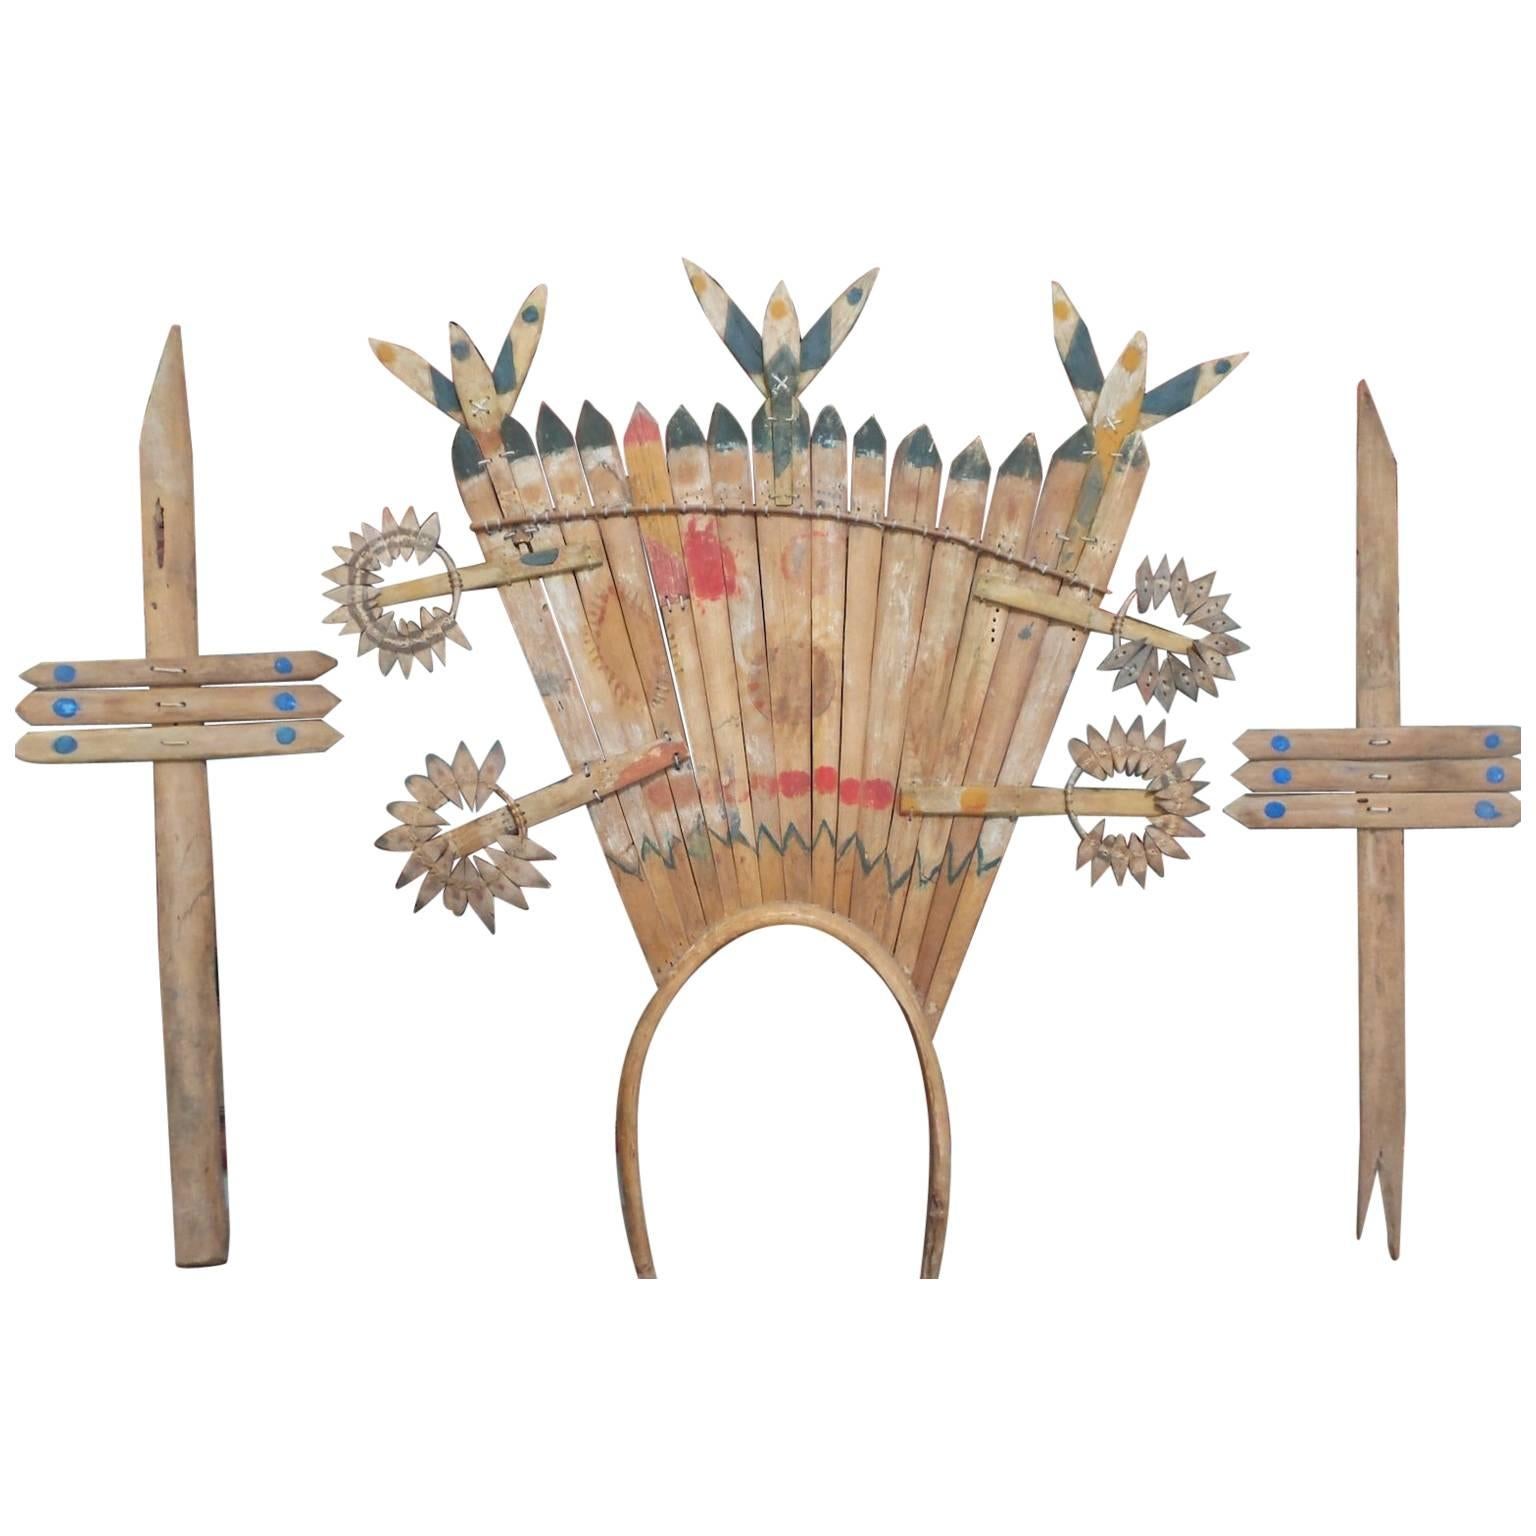 Apache Gahn Mountain Spirit Crown and Dance Wands, circa 1930s